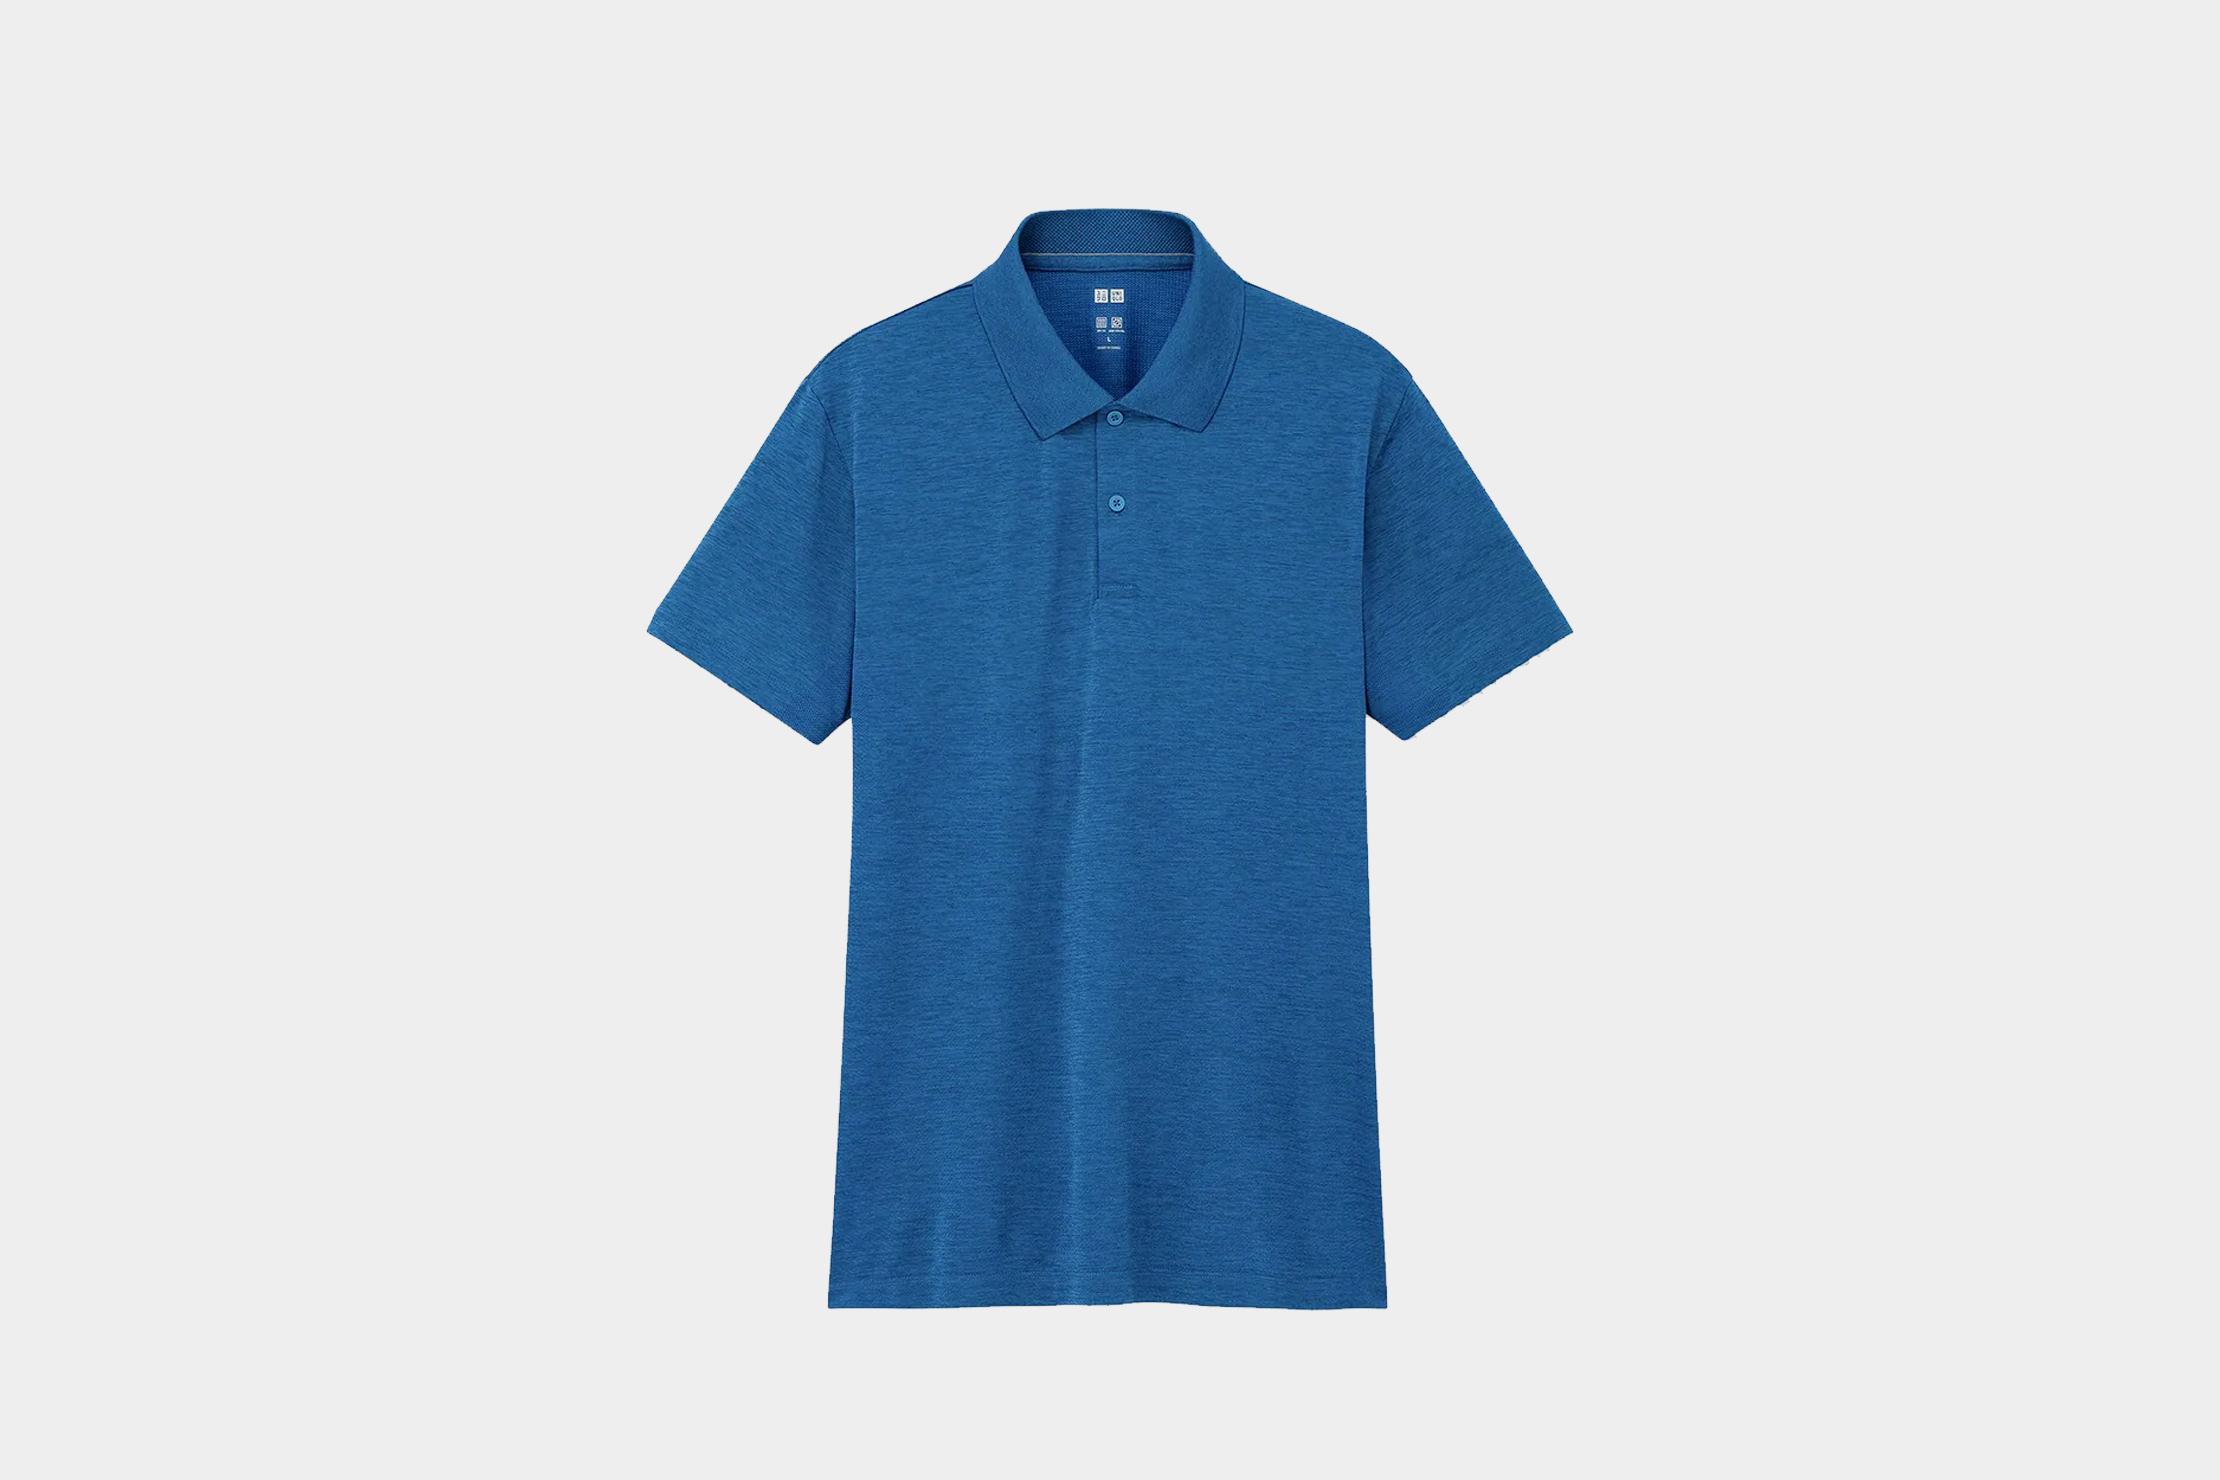 Uniqlo Beige Polo Shirt Medium Mens Fashion Tops  Sets Tshirts  Polo  Shirts on Carousell